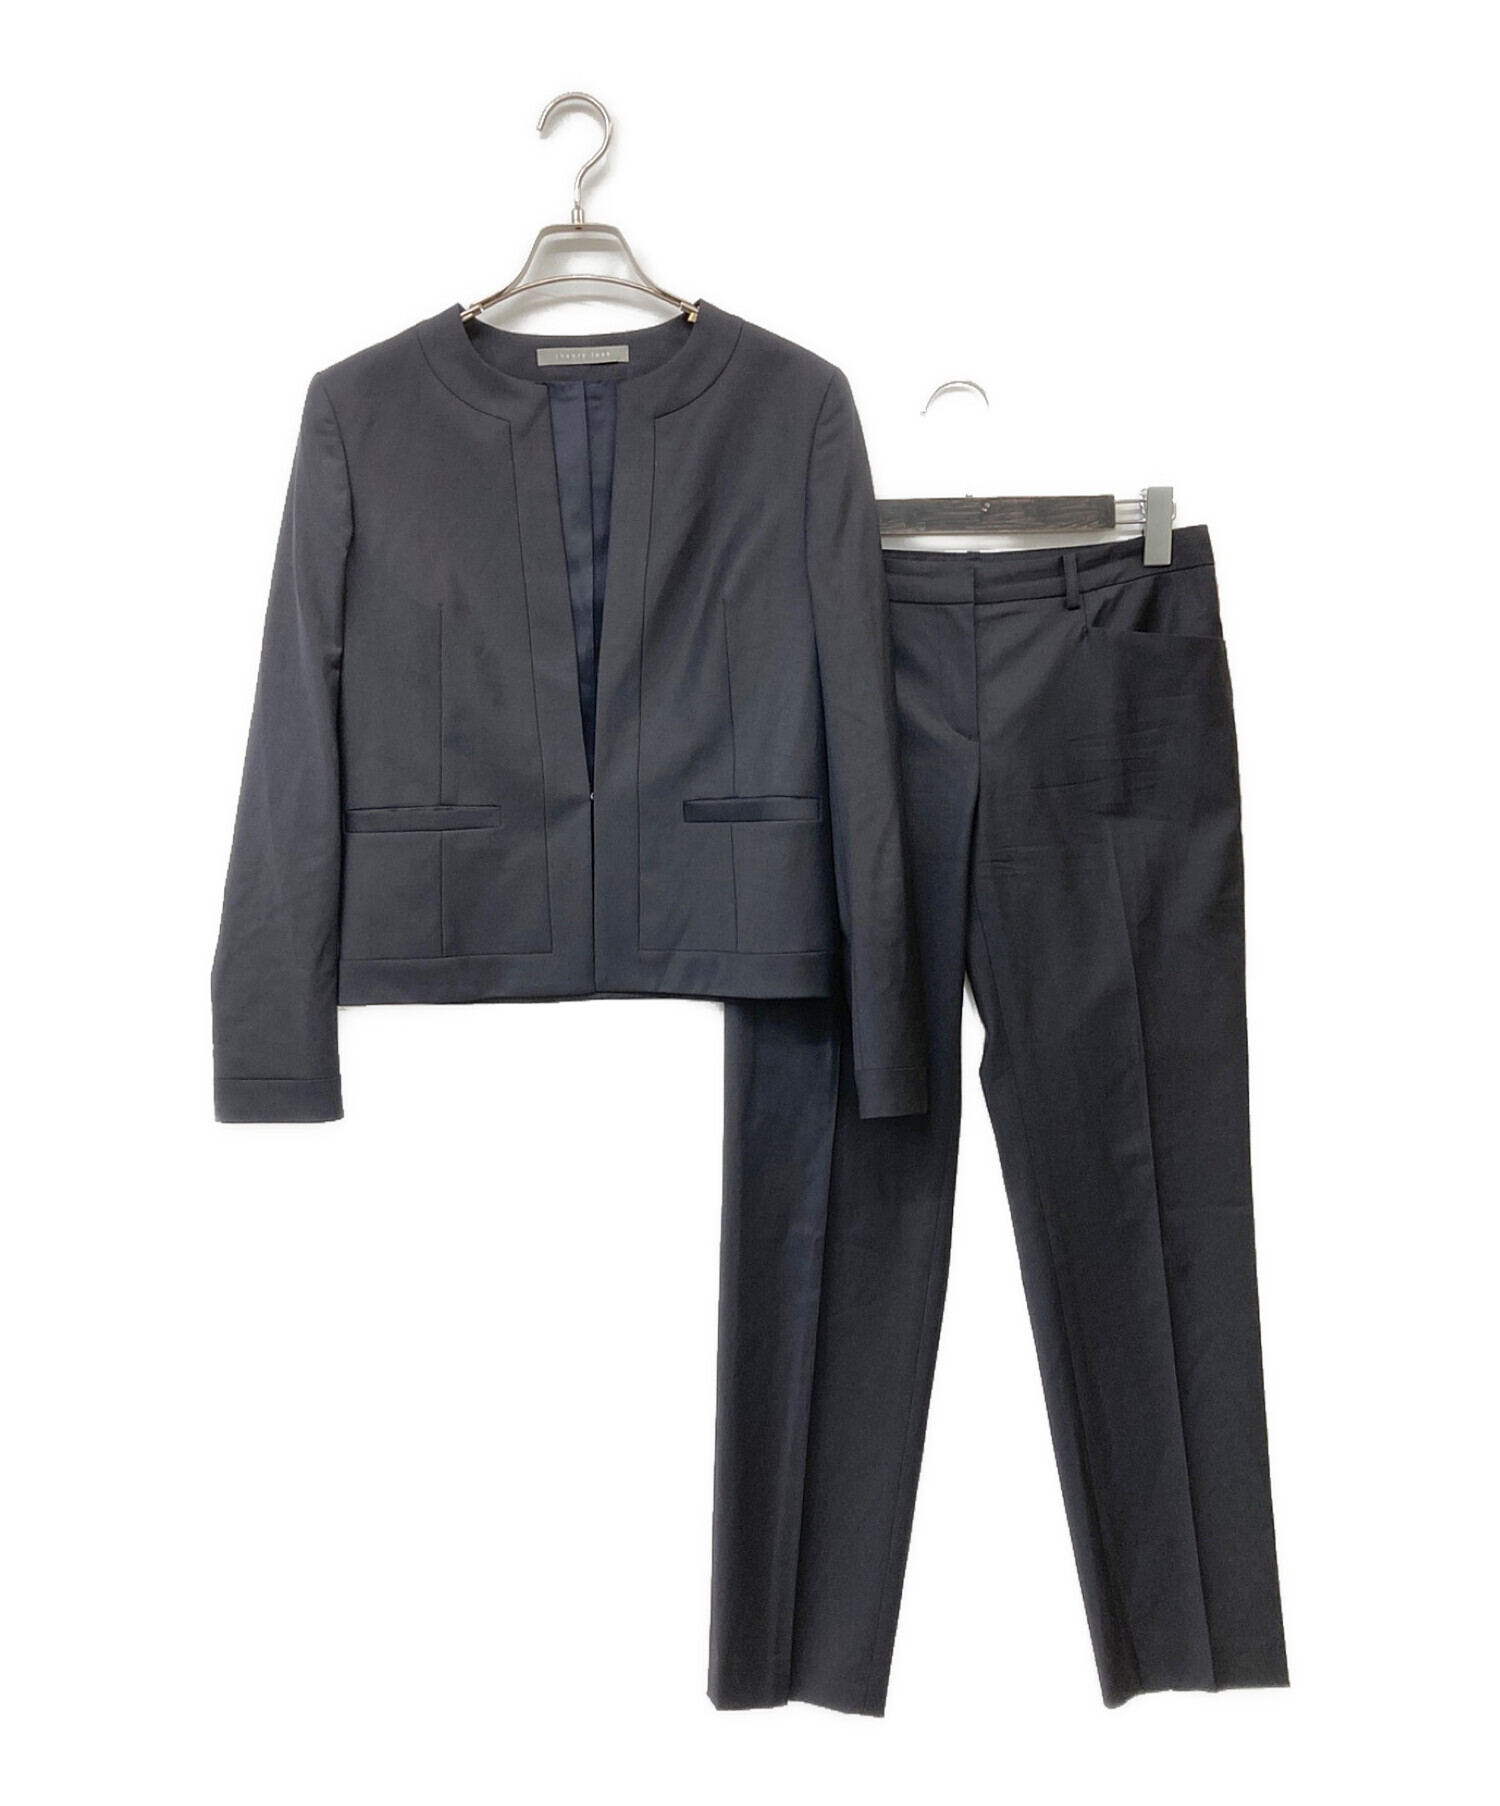 Theory Luxe スーツ（黒） サイズ38使用感少なく綺麗な状態ですが